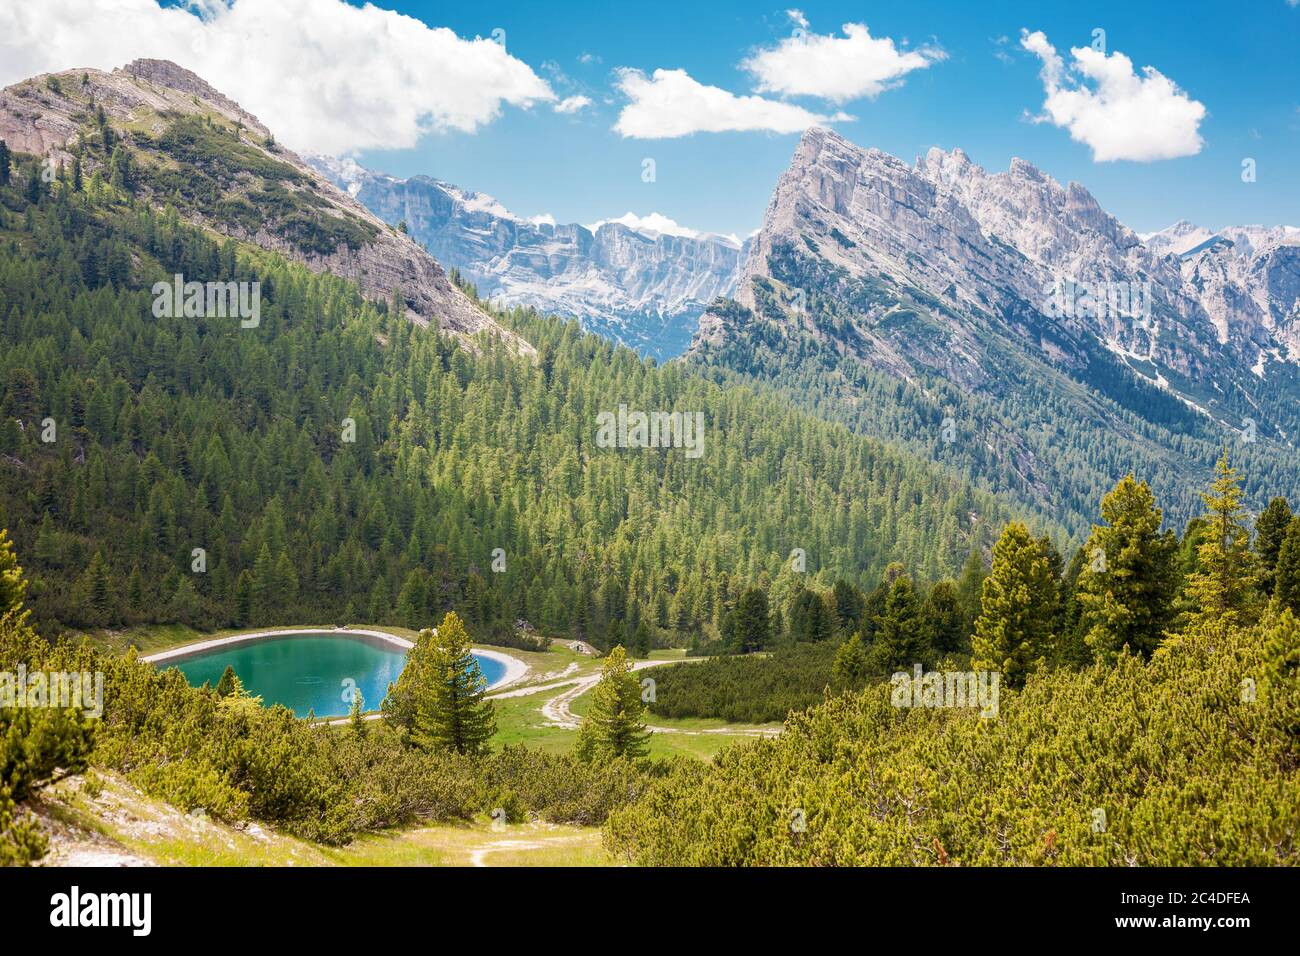 Magnifique paysage des Dolomites avec un lac tourquise près de Cortina, Italie Banque D'Images